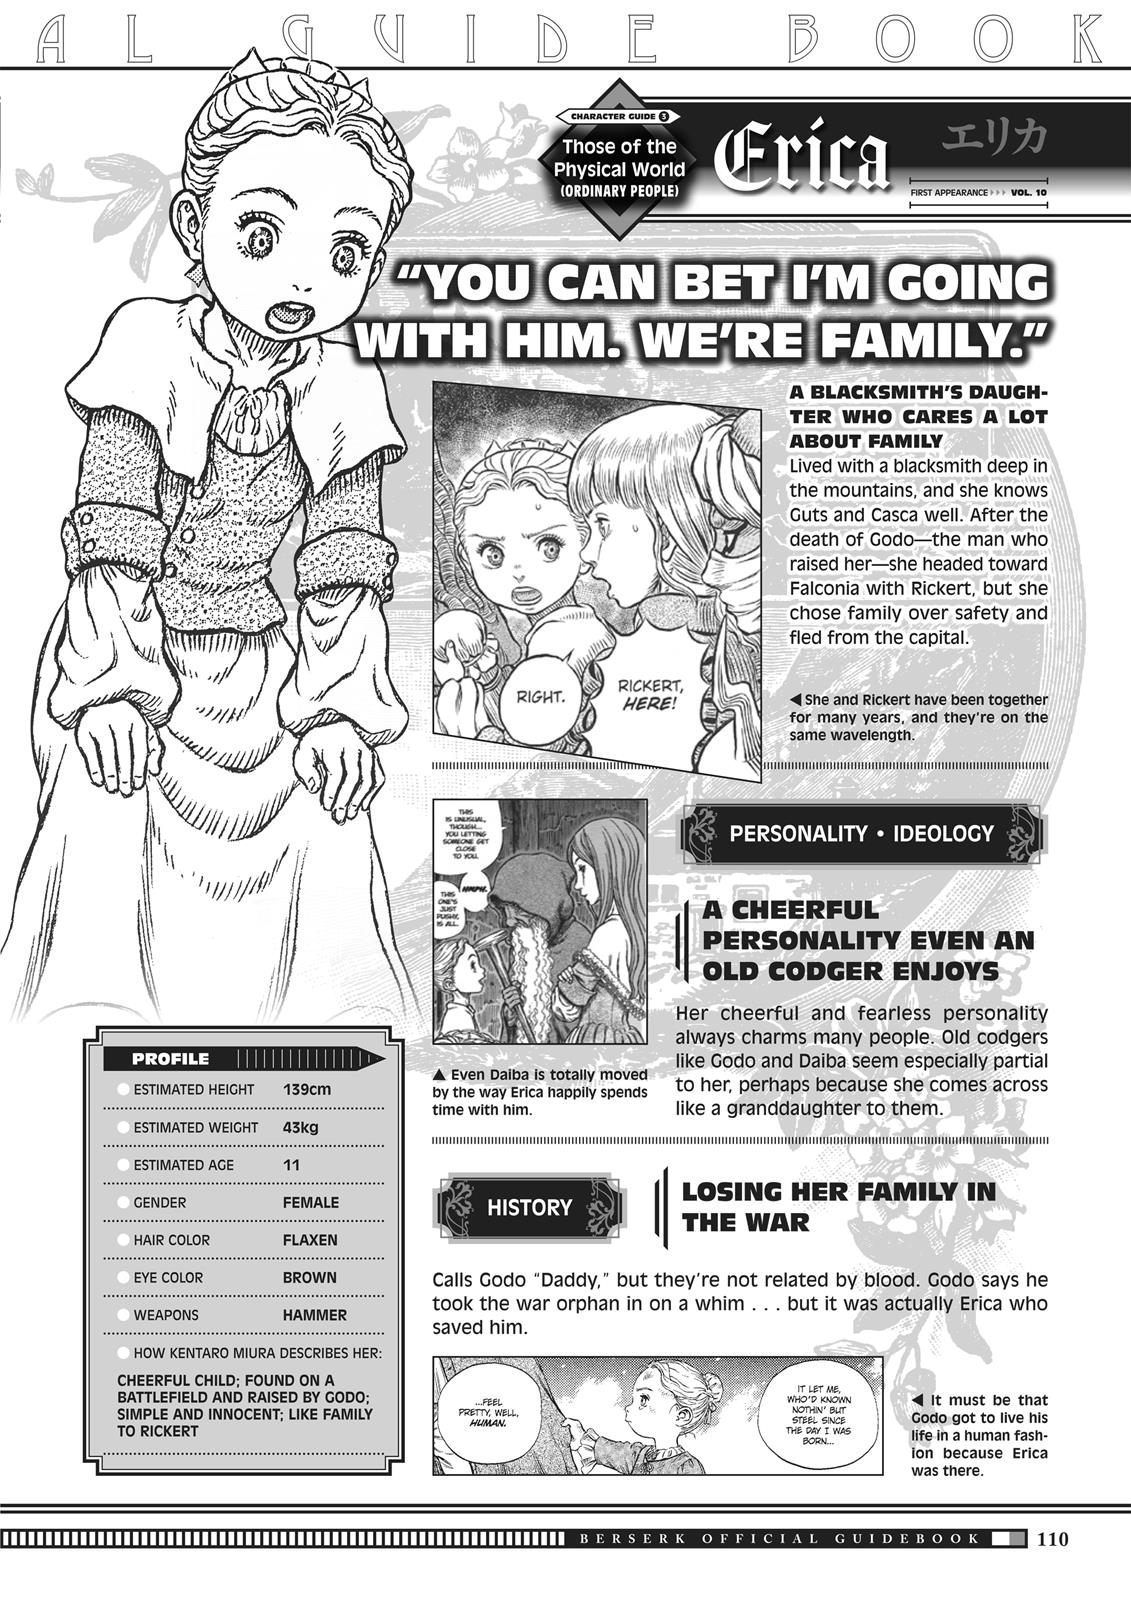 Berserk Manga Chapter 350.5 image 108